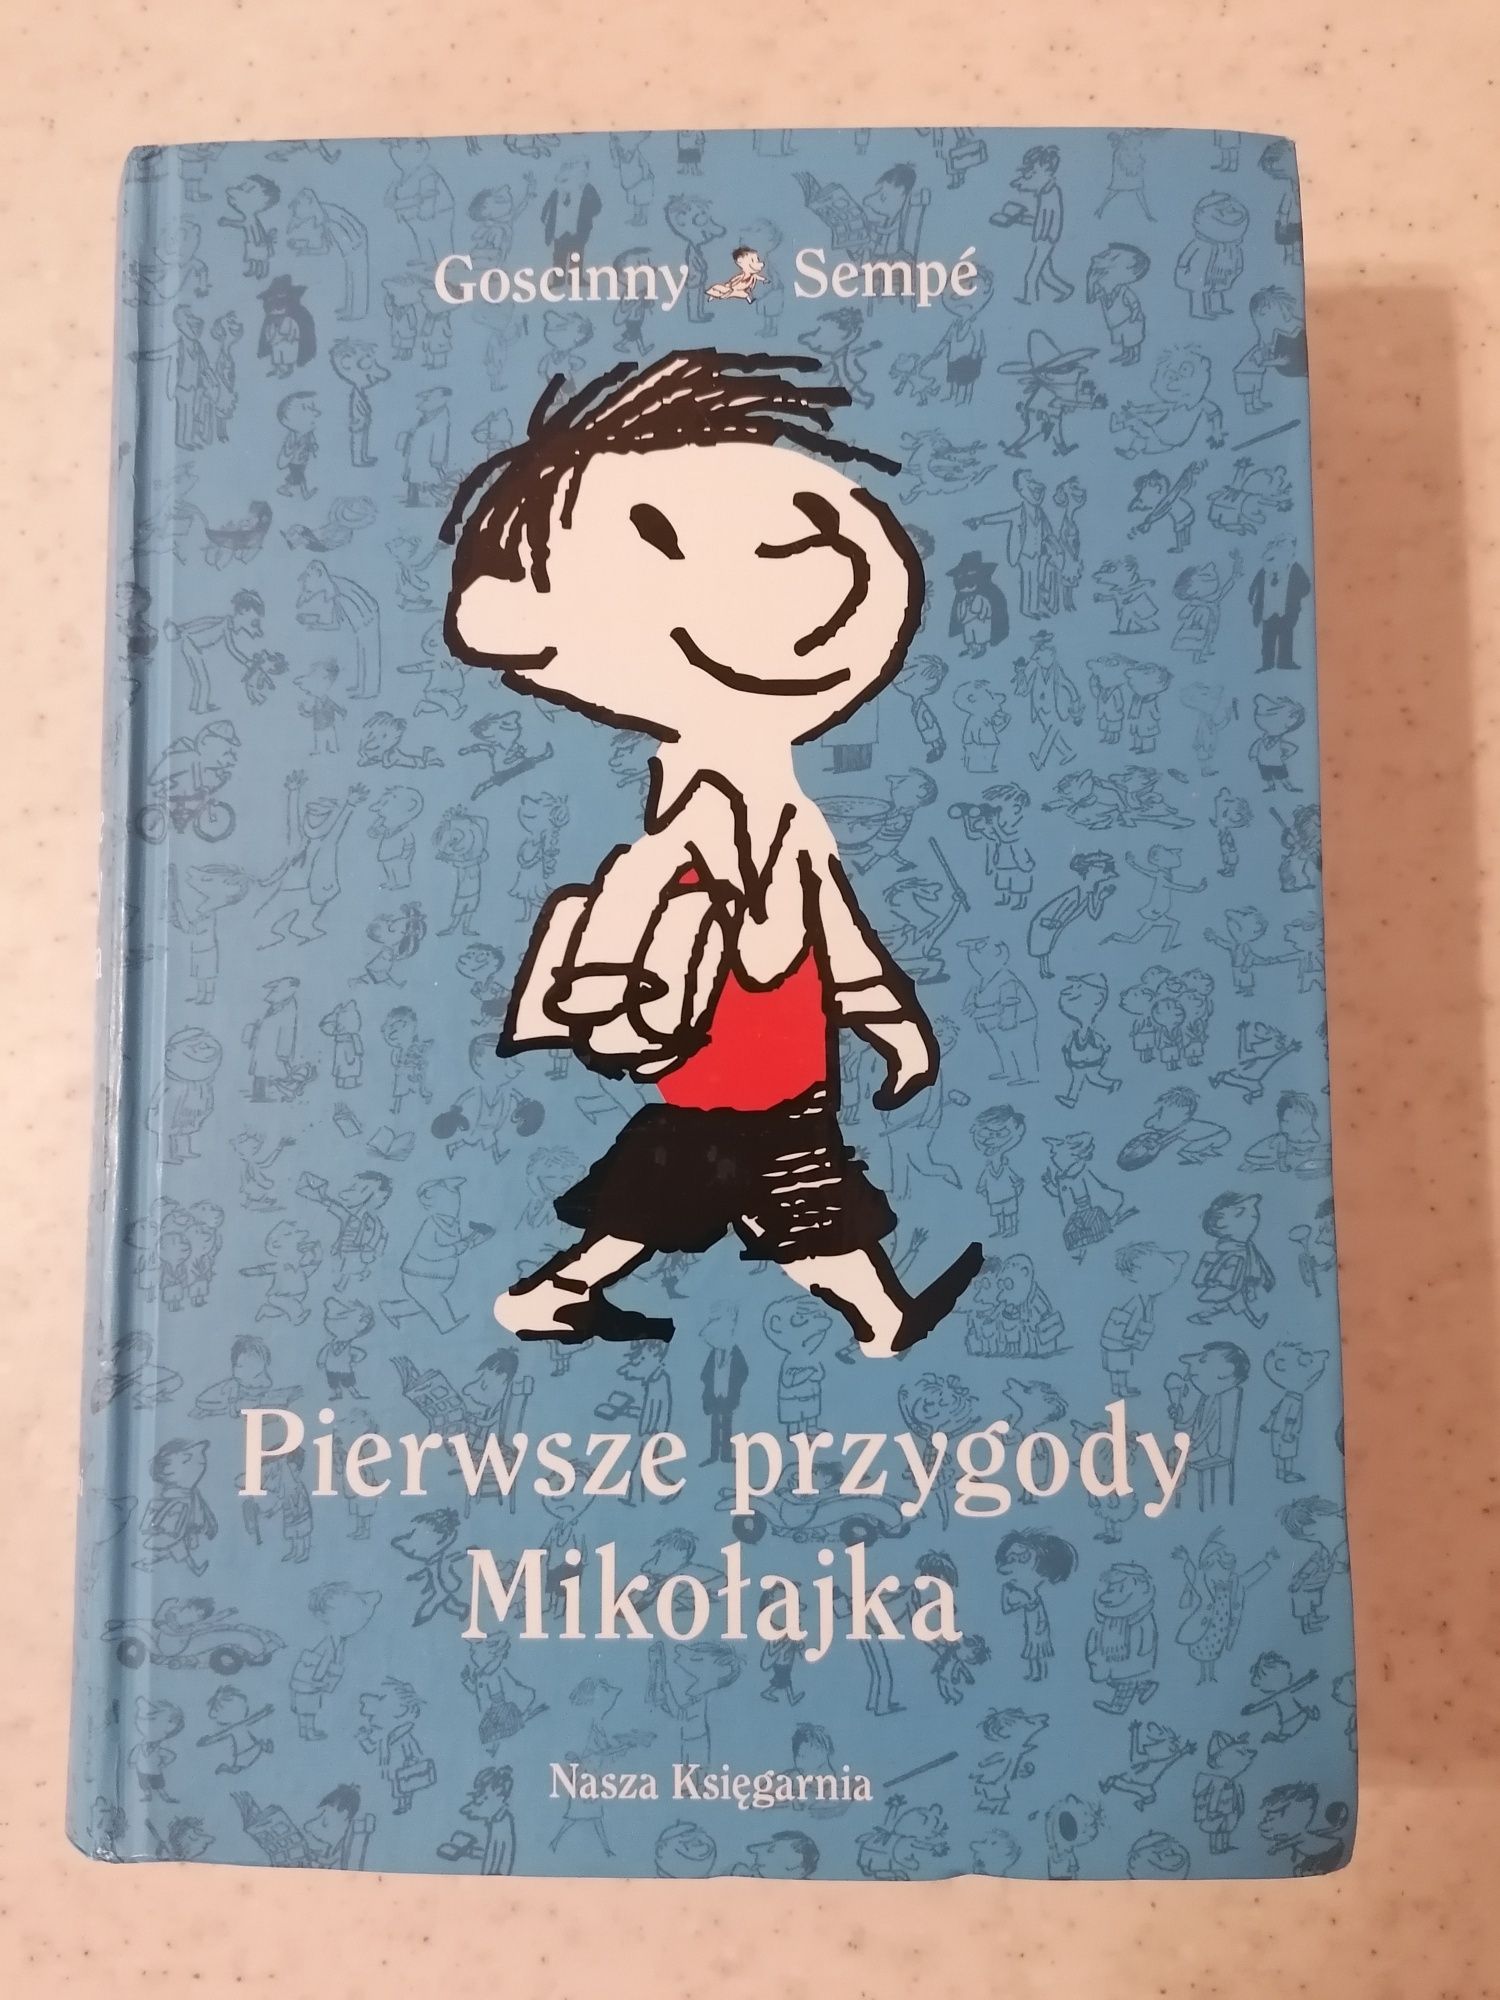 Książka "Pierwsze przygody Mikołajka" autor Sempe Goscinny